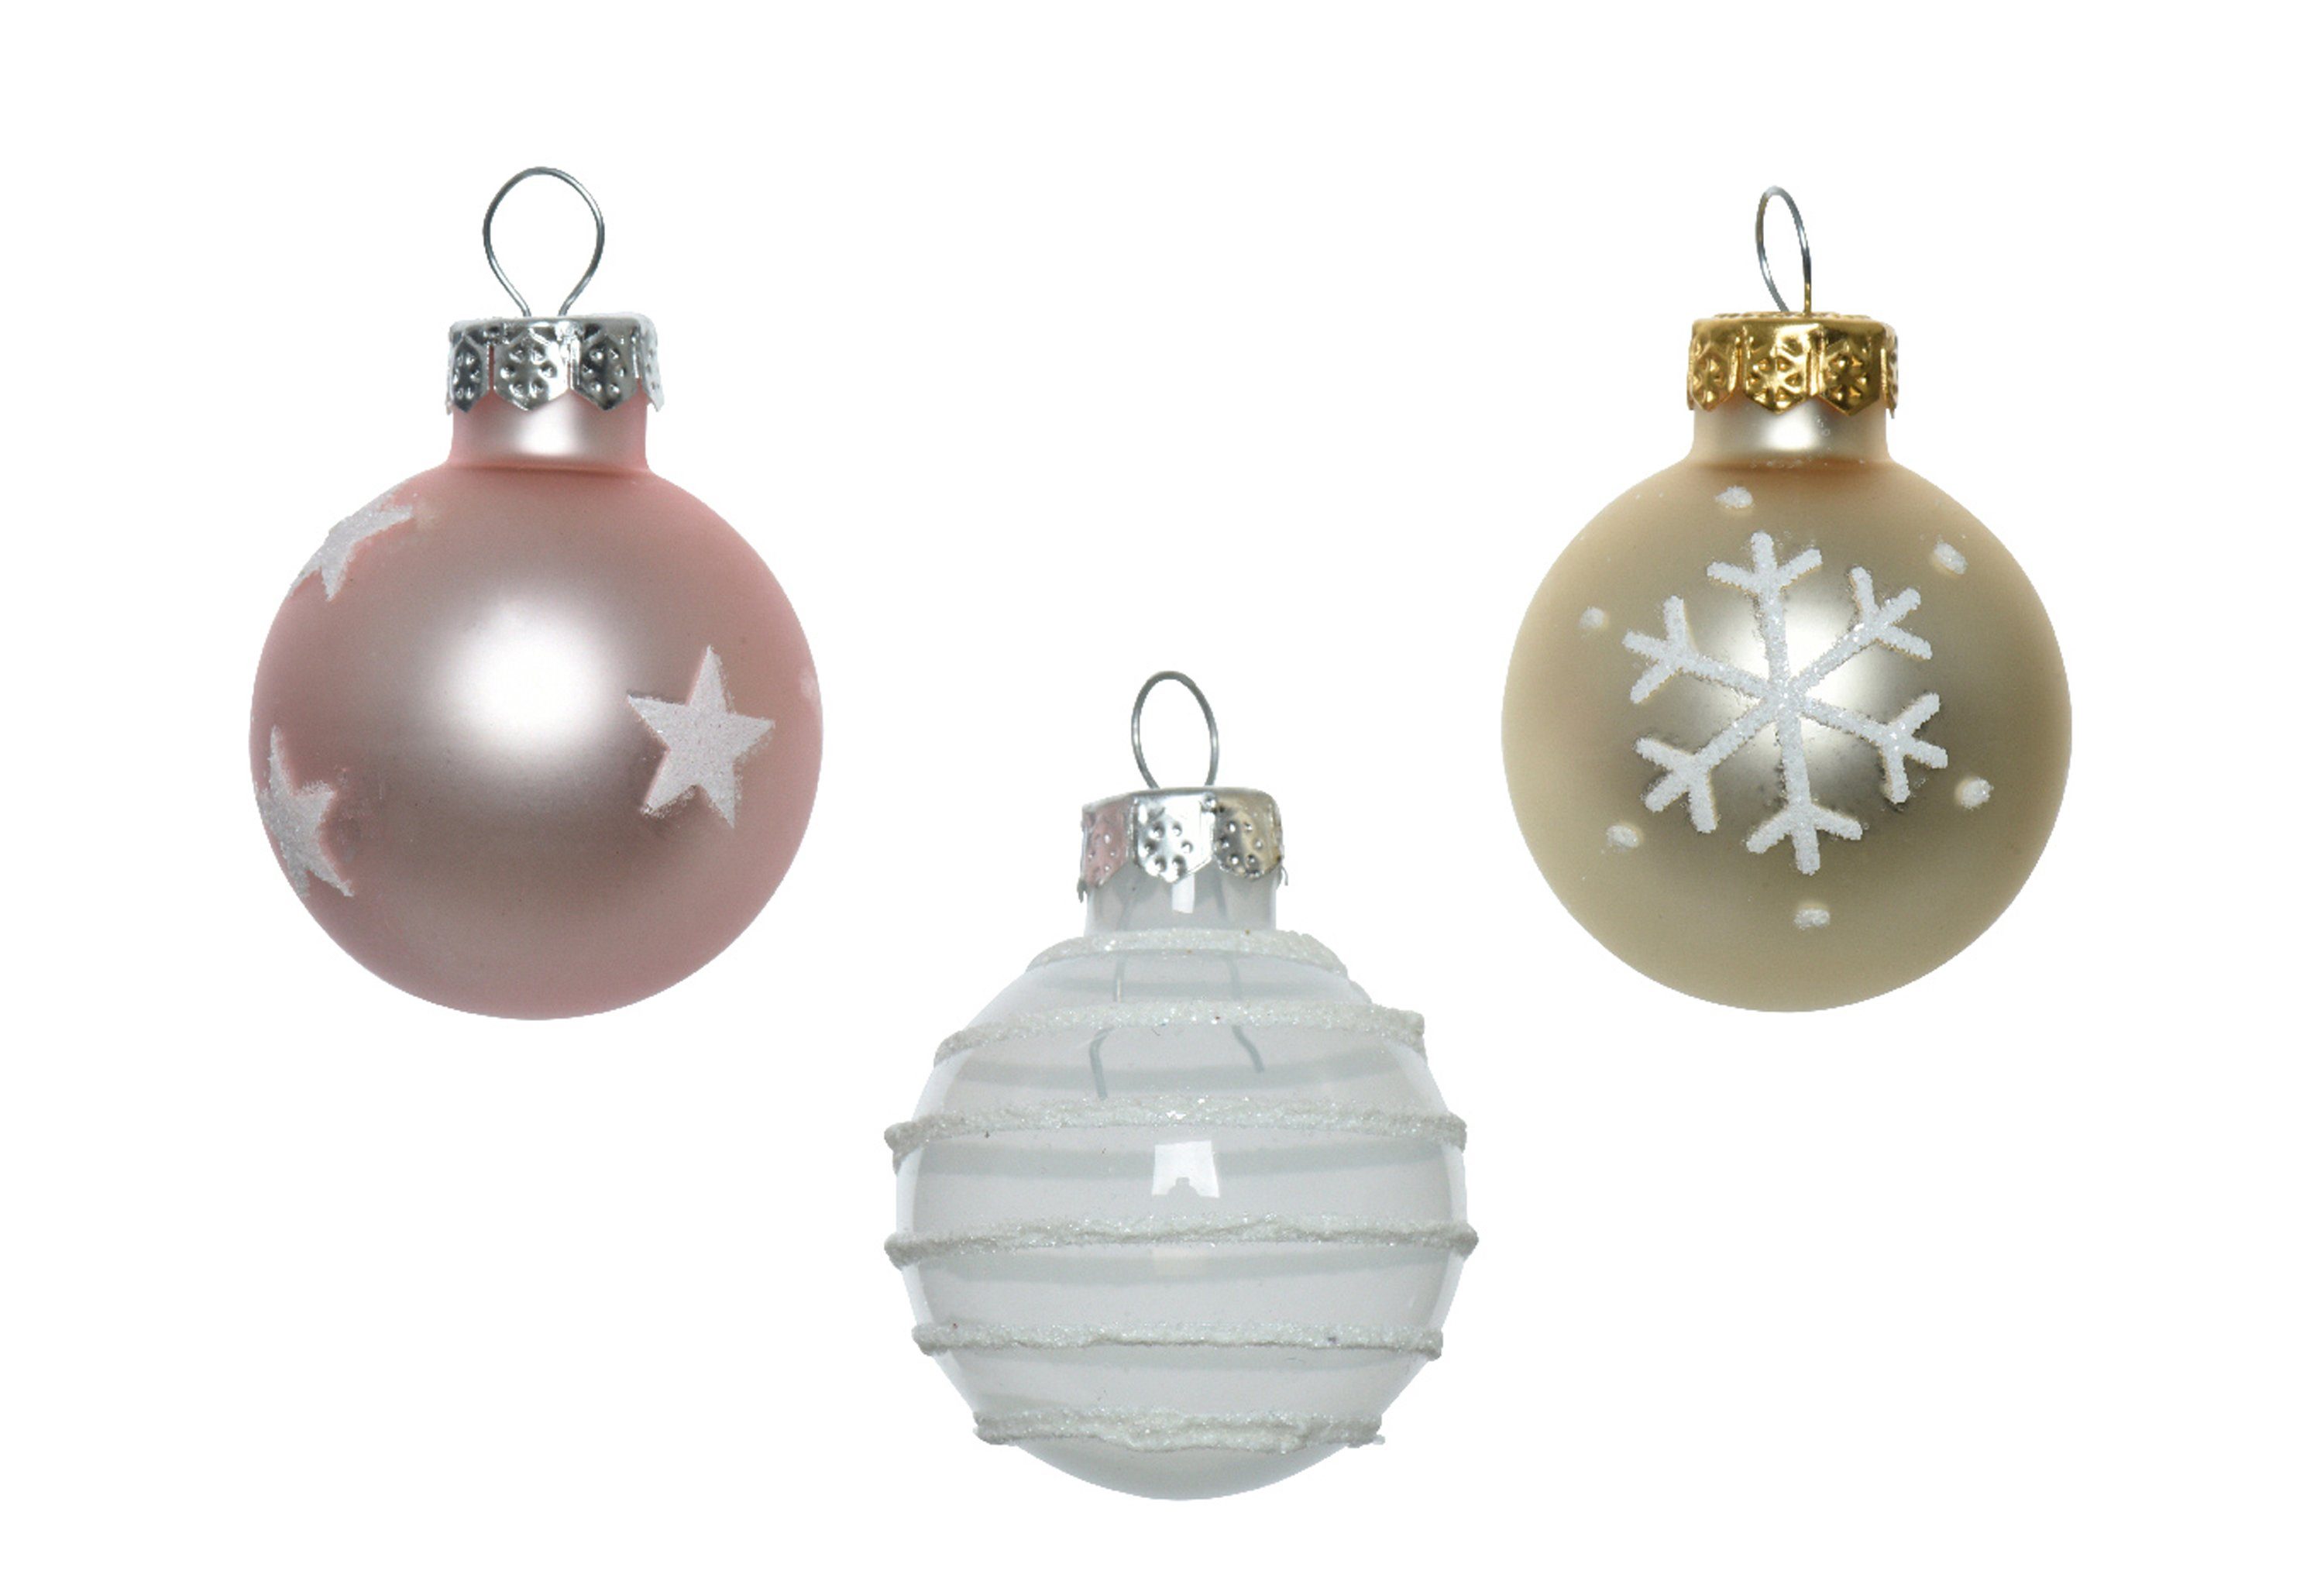 Glas rosa mit Weihnachtsbaumkugel, season Mix, 3cm 9er Set Weihnachtskugeln Decoris Motiven decorations